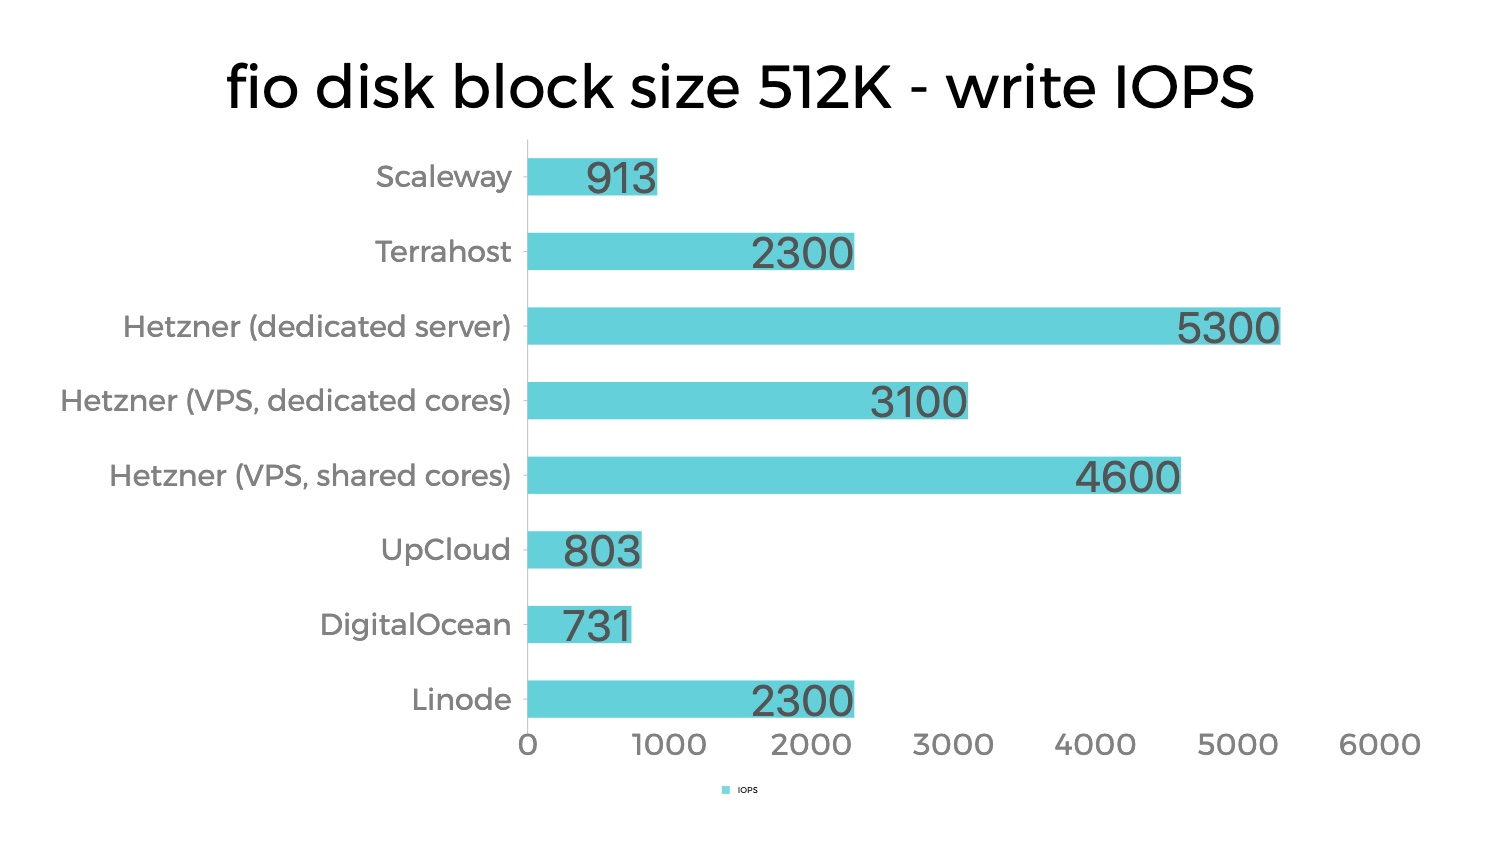 Đánh giá, so sánh hiệu suất Disk và CPU của Linode, DigitalOcean, UpCloud, Hetzner, Terrahost và Scaleway